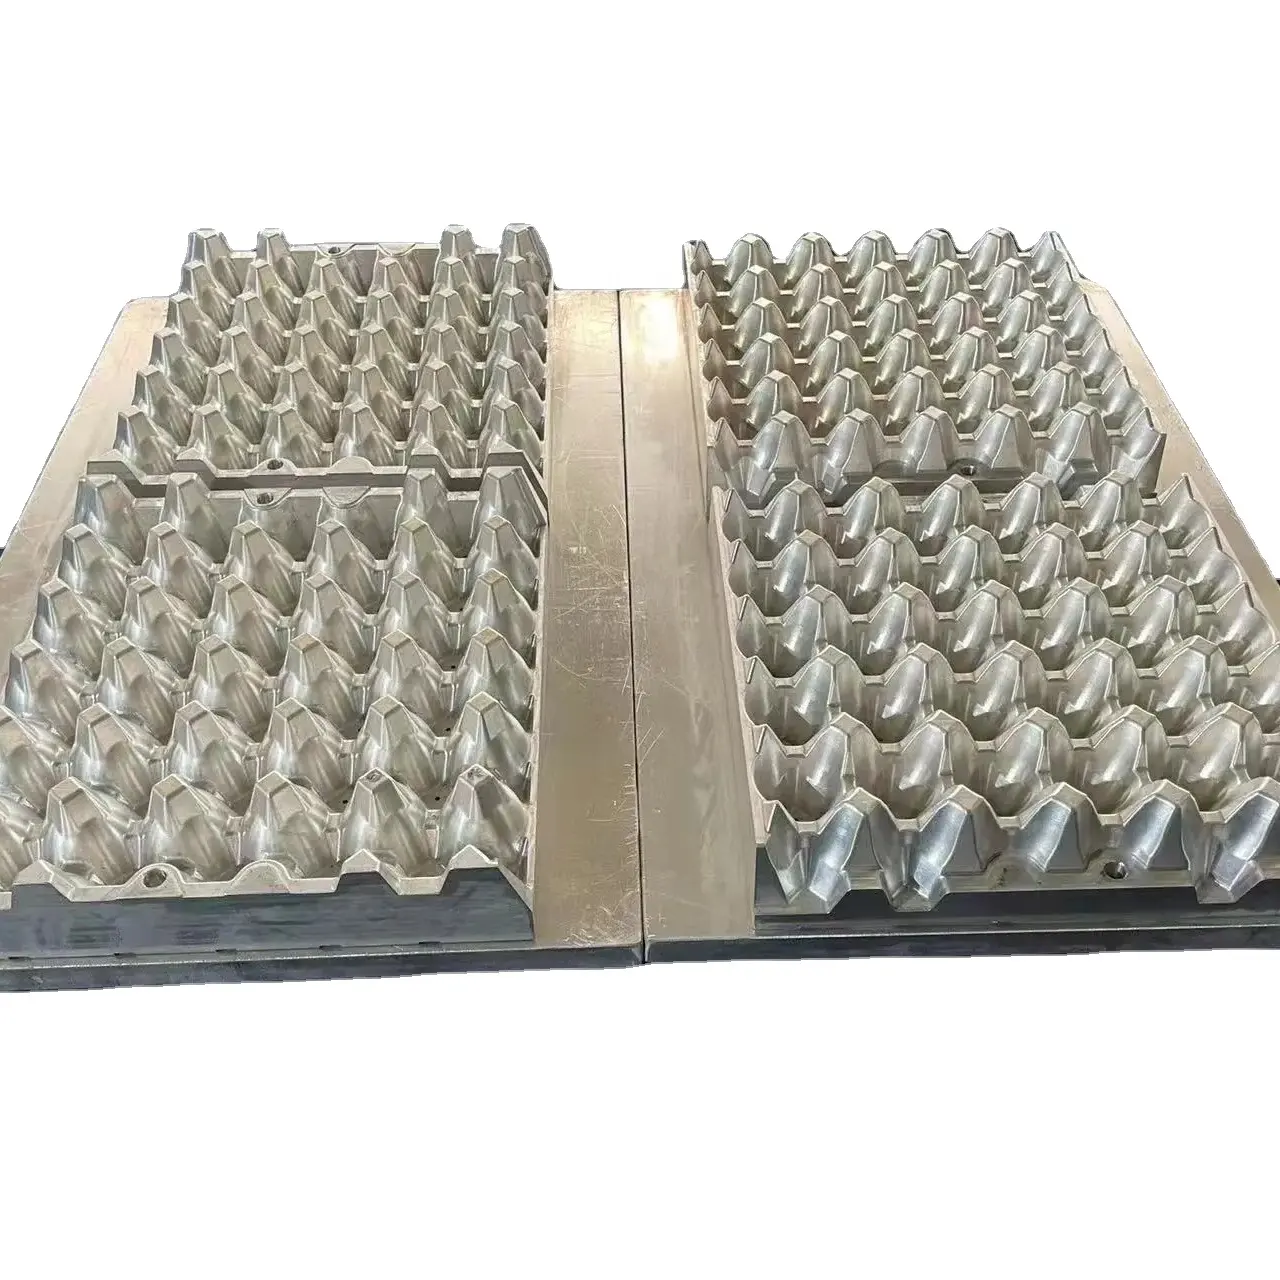 नेपाल/तुर्की स्वत: कागज अंडे की ट्रे टोकरा गत्ते का डिब्बा उत्पादन बनाने/मुद्रण मशीन